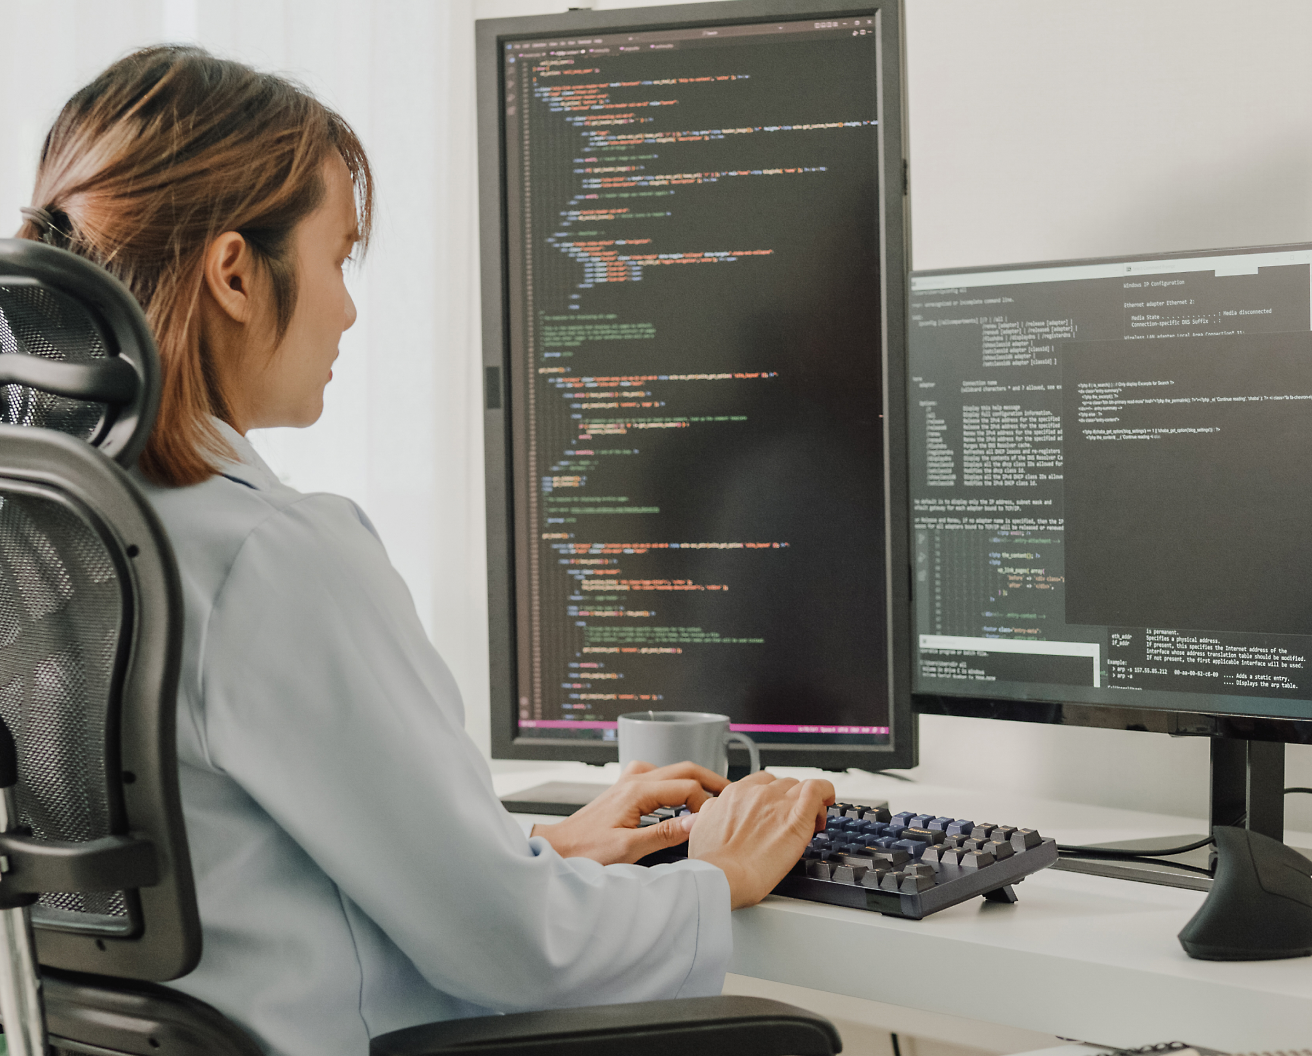 Eine Frau, die auf einem Bürostuhl sitzt und auf einem Computer programmiert, während auf mehreren Bildschirmen Programmiercode zu sehen ist.